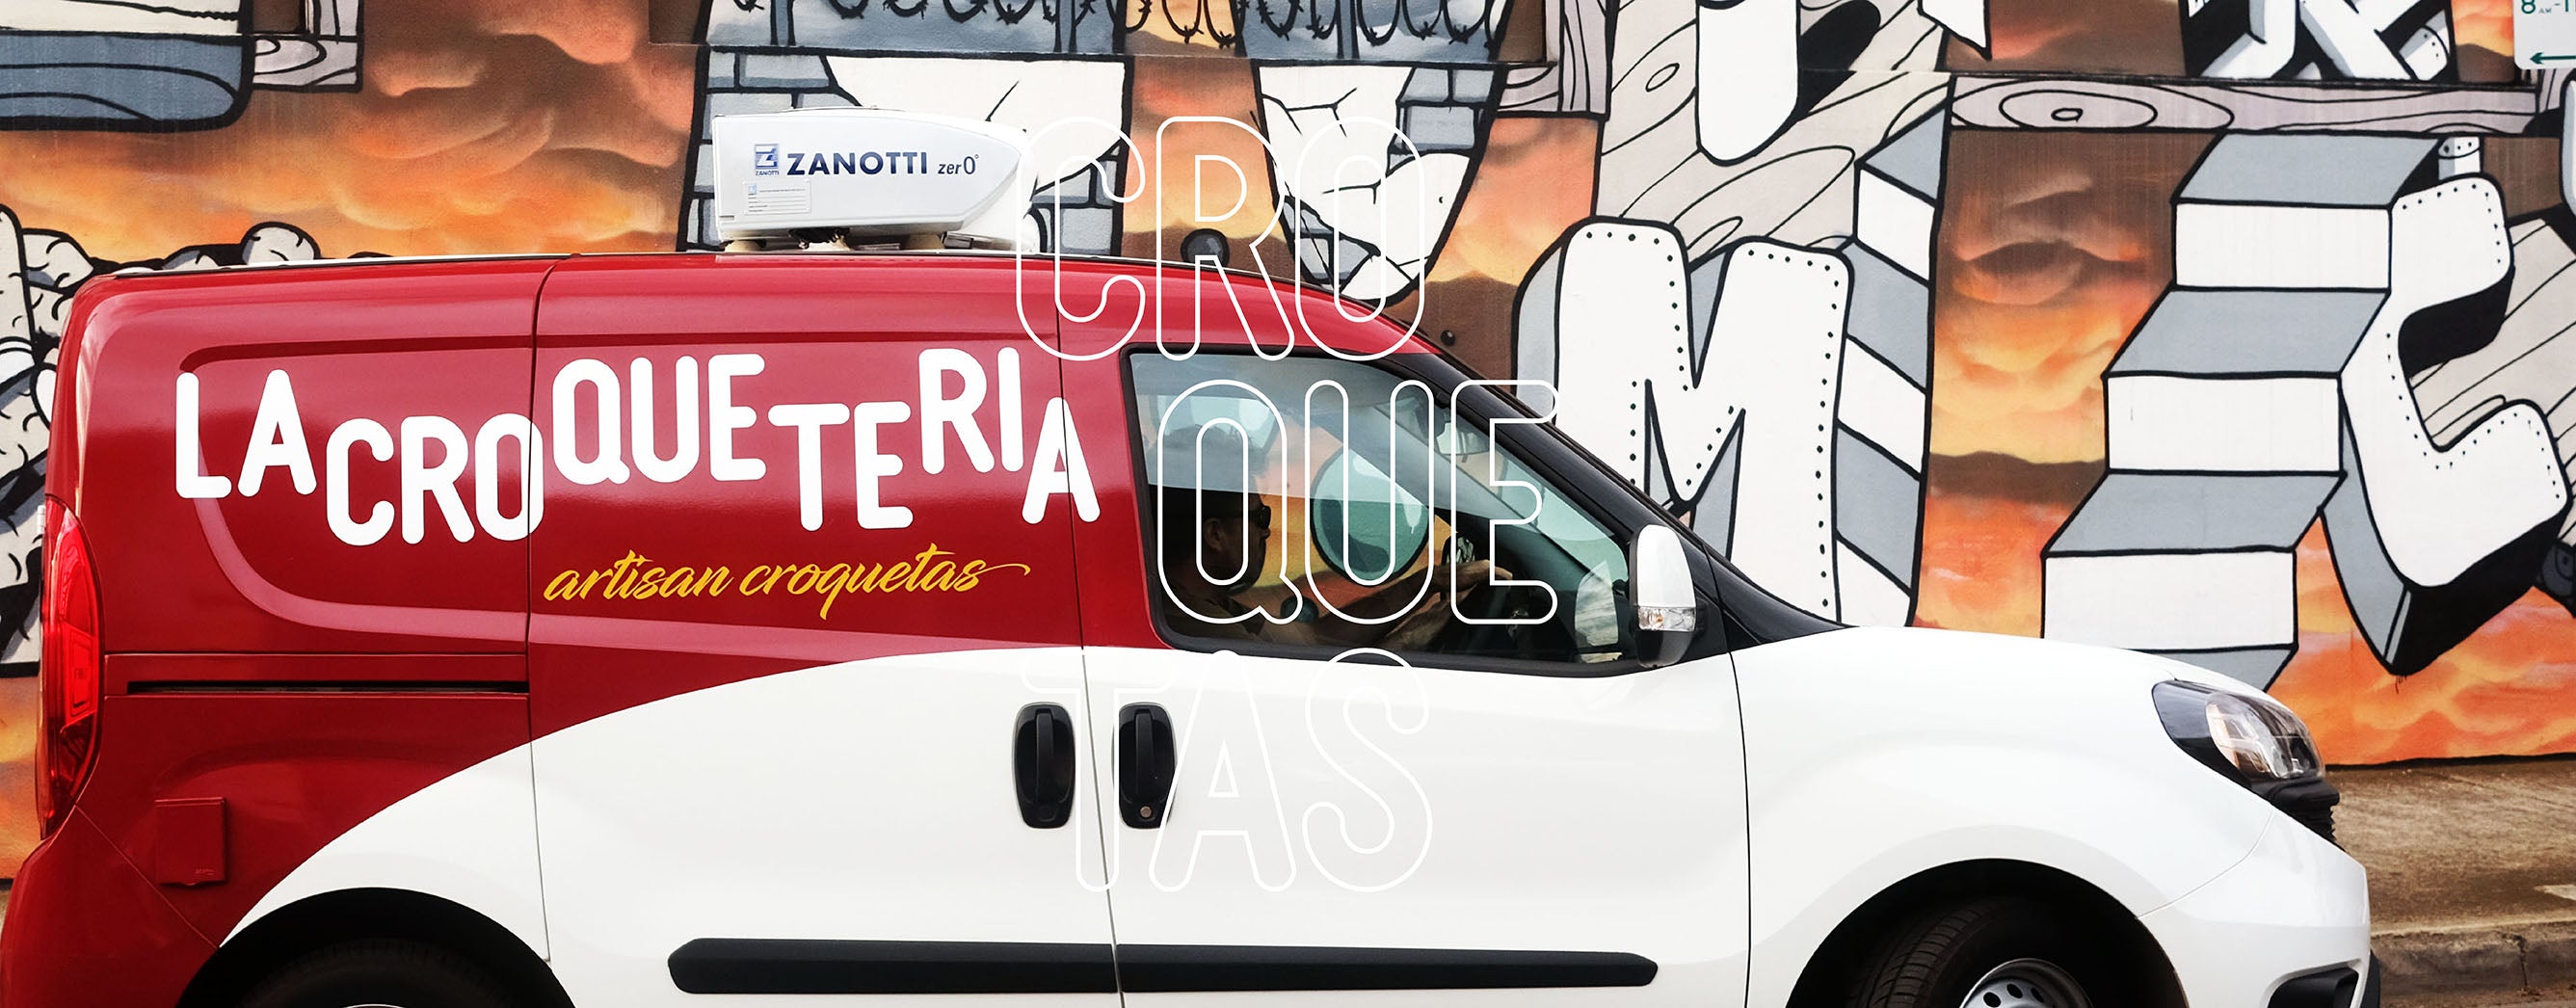 Croqueneta. Croquette wagon. La Croqueteria delivery van. Delivery of Spanish croquettes in Melbourne (Australia)